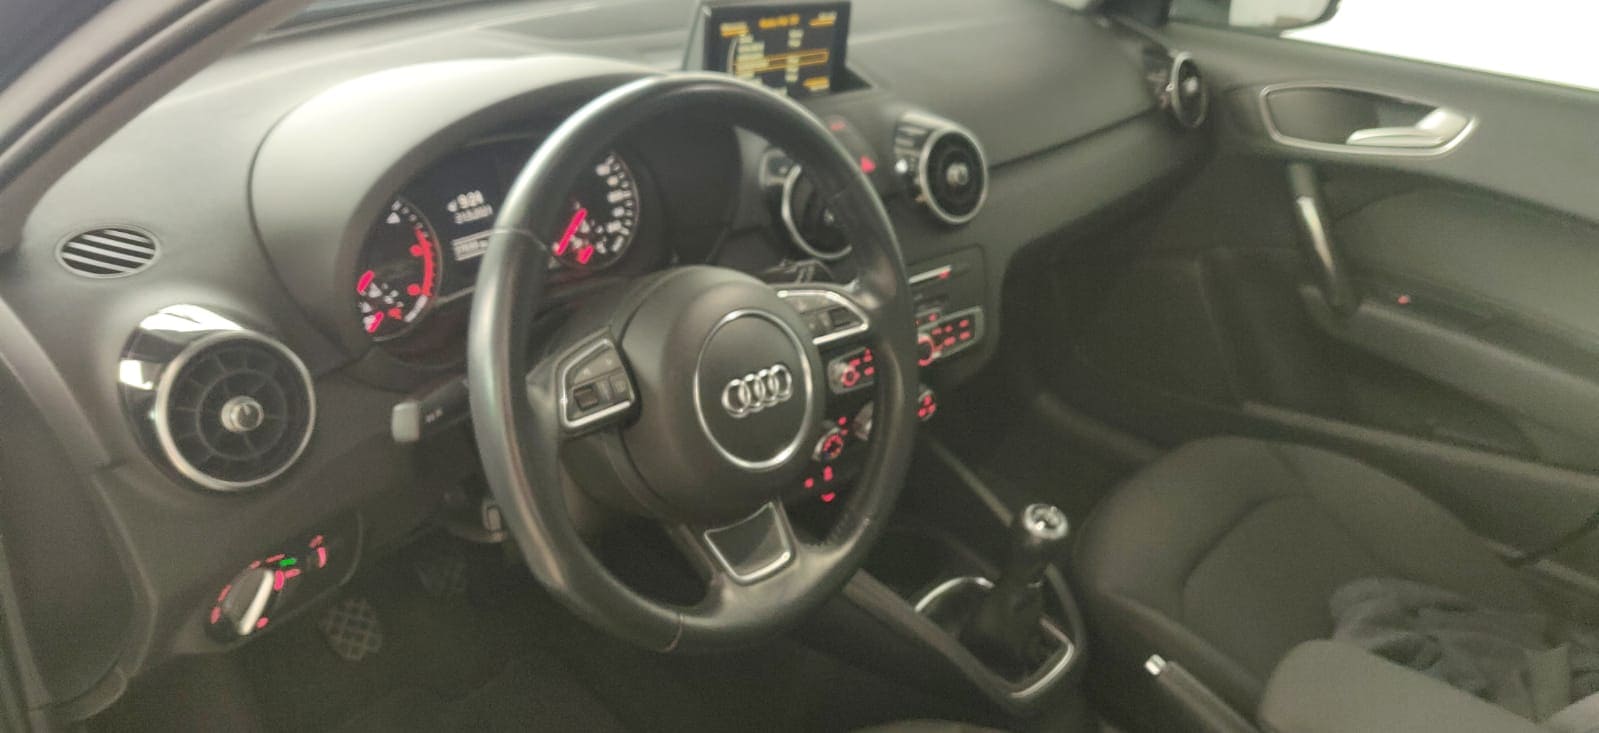 Audi A1 Sportback 1.6 TDI 116 cv volante